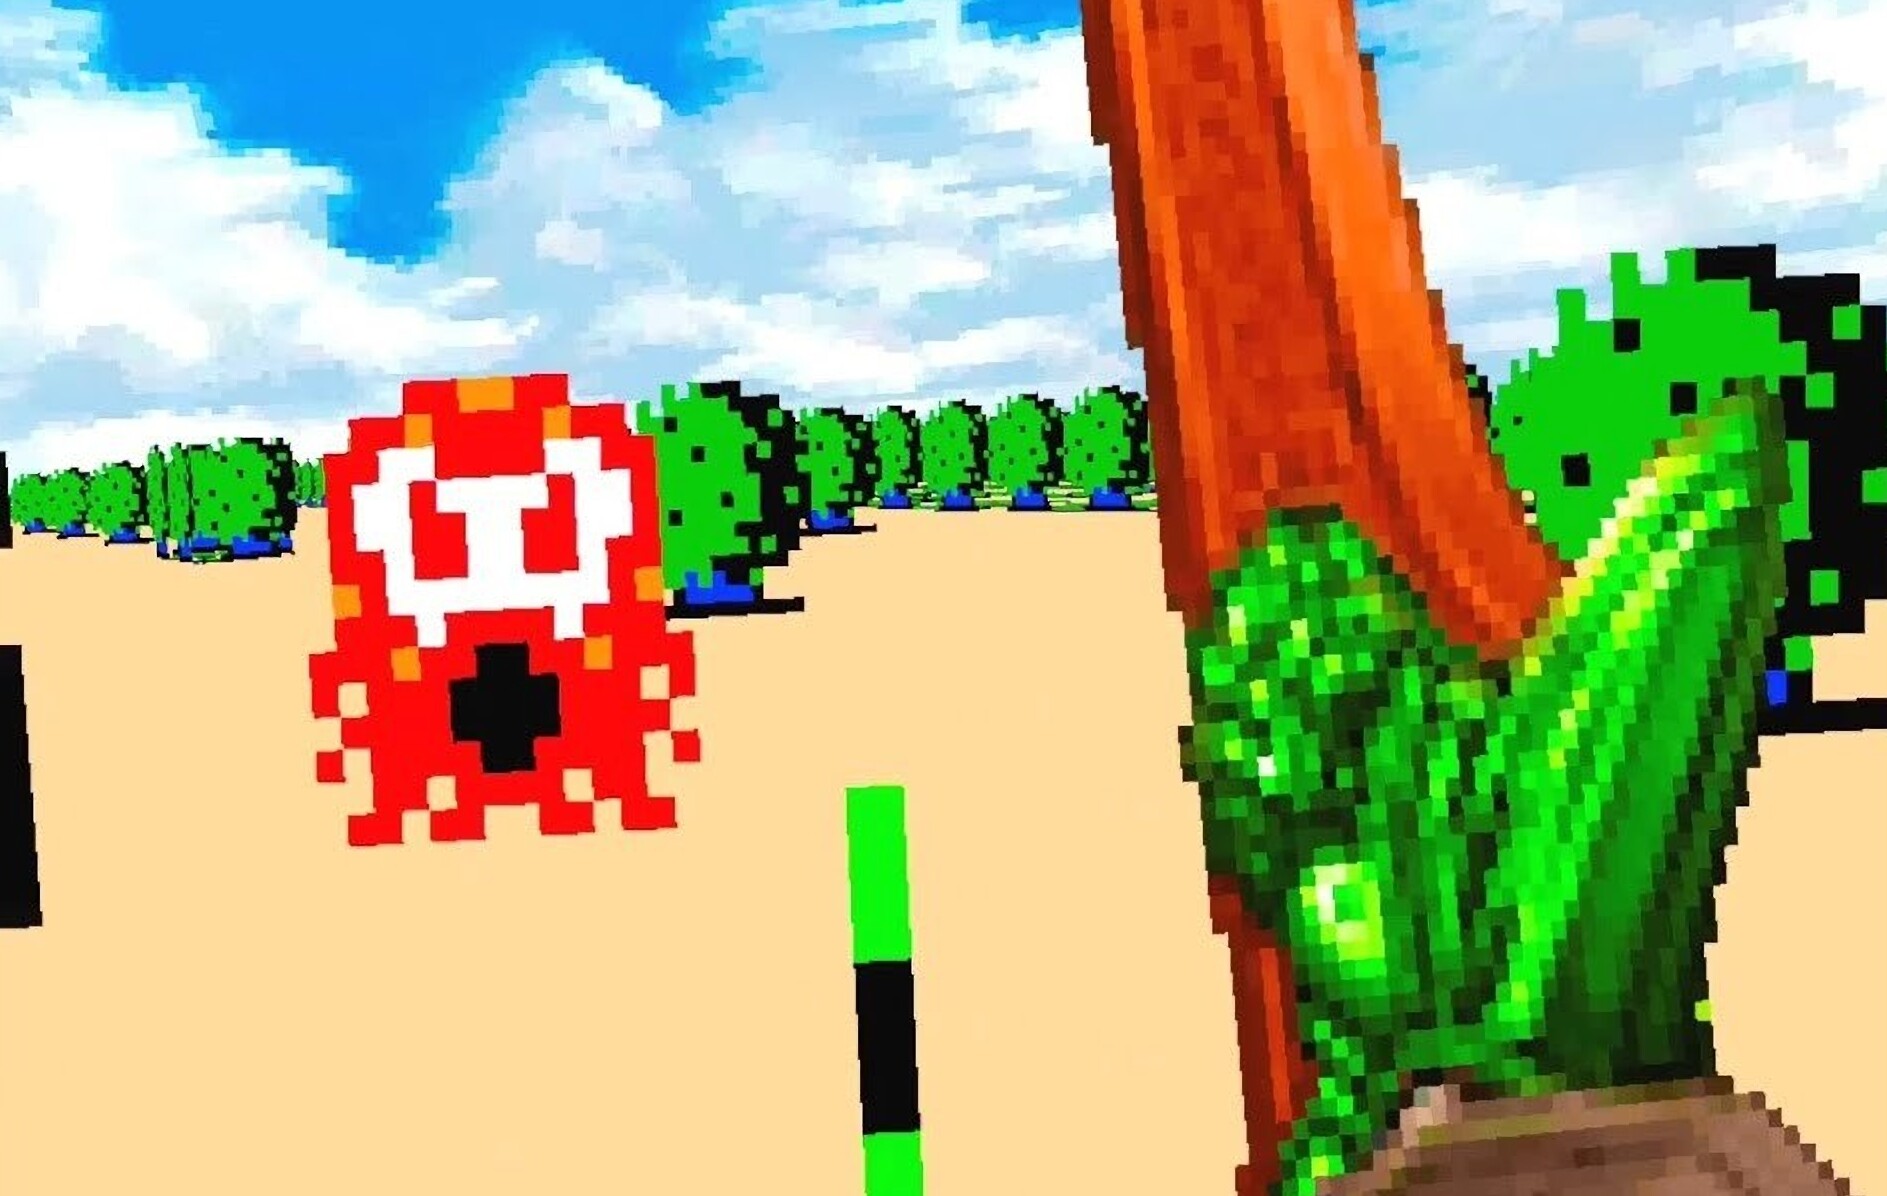 The original Zelda is now visitable in VR thanks to DOOM